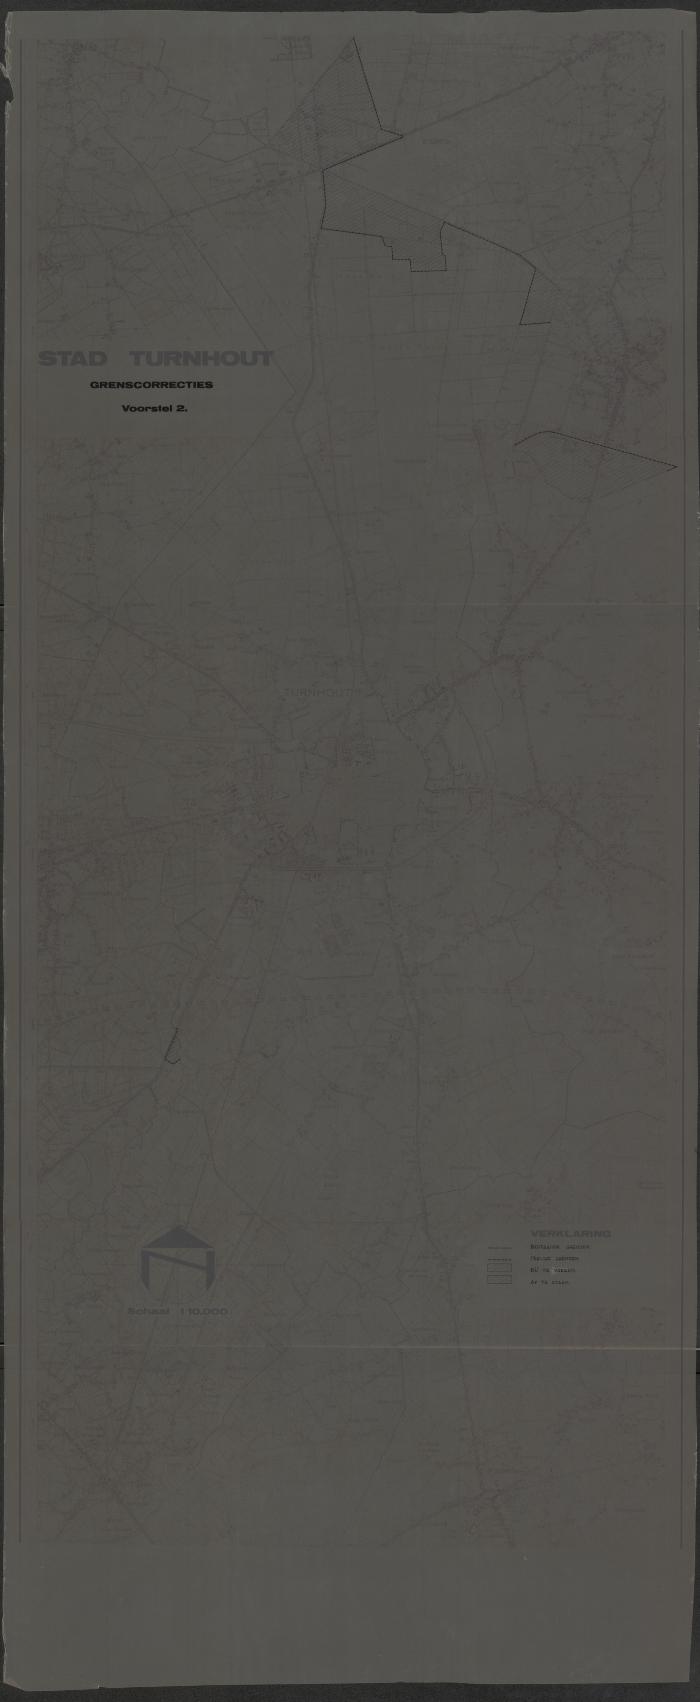 "Stad Turnhout. Grenscorrecties. Voorstel 2", kaart van Turnhout
